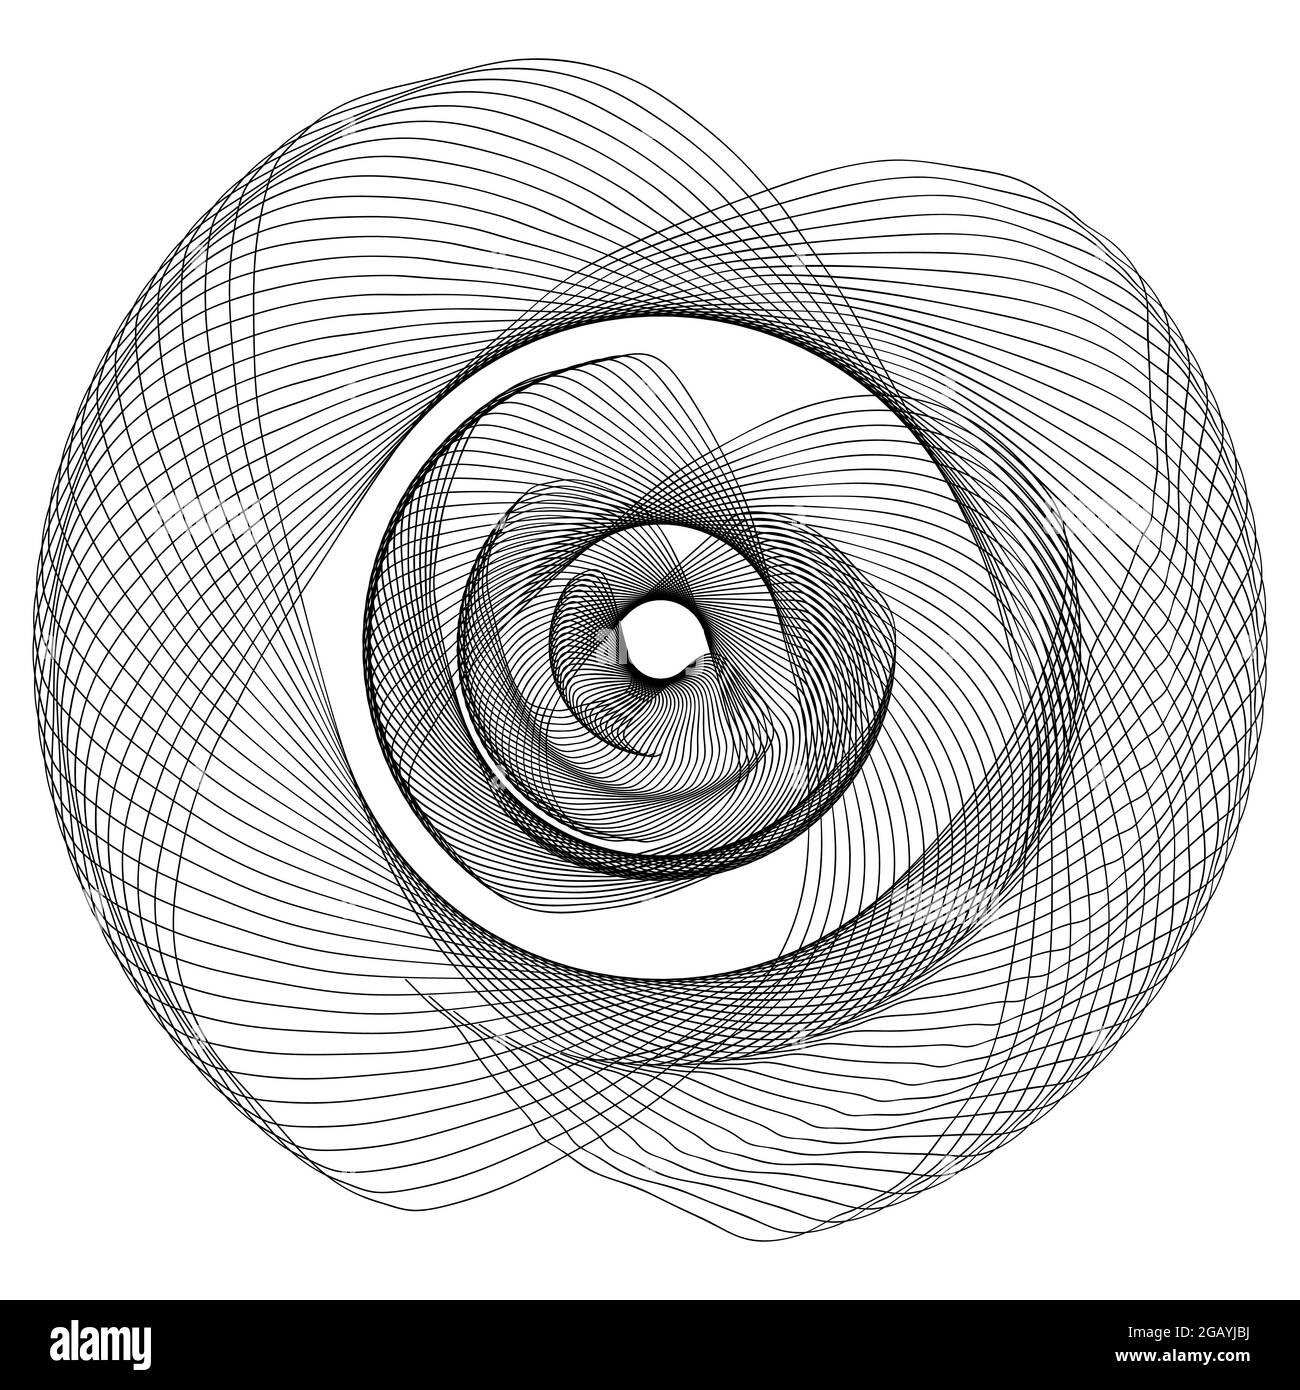 Schwarze Linie abstraktes Muster Causal random Chaos Chaos Chaos Design Element isolierte Vektor-Illustration auf weißem Hintergrund Stock Vektor